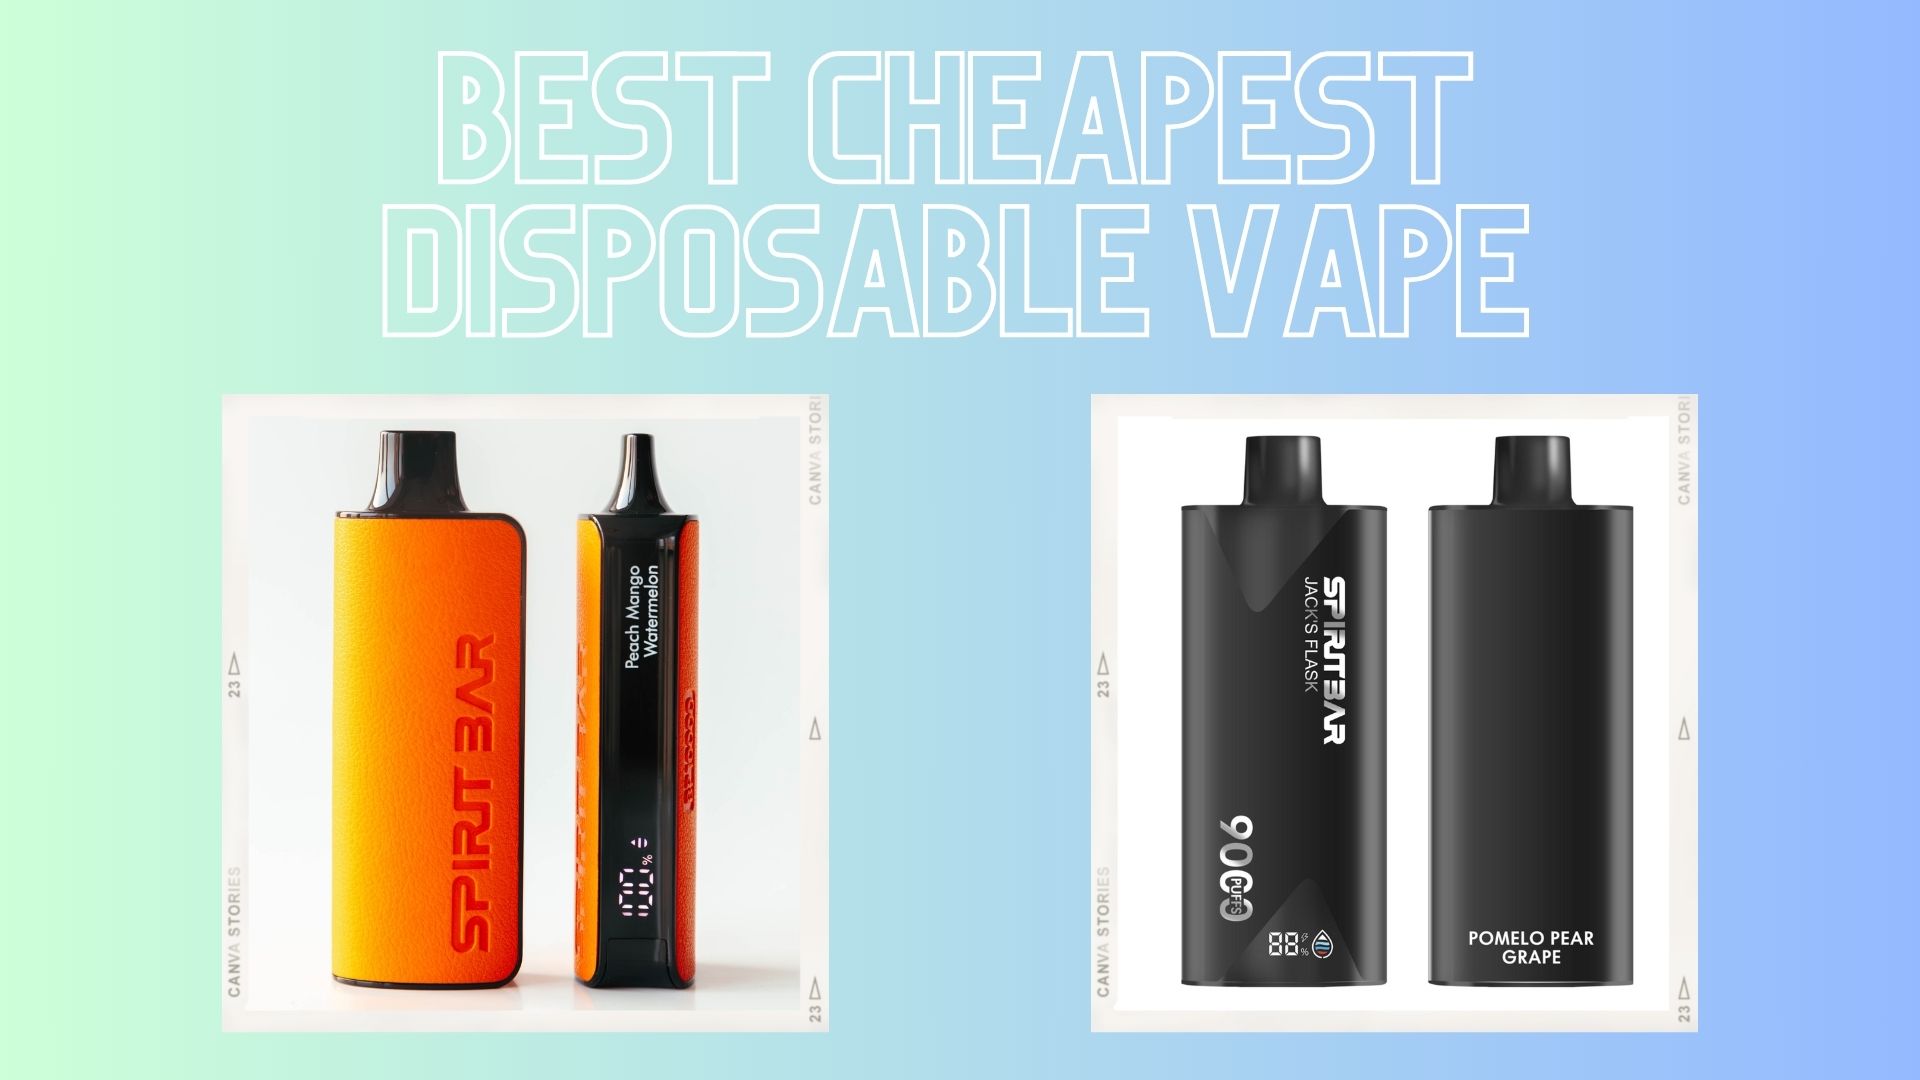 Best Cheapest Disposable Vape